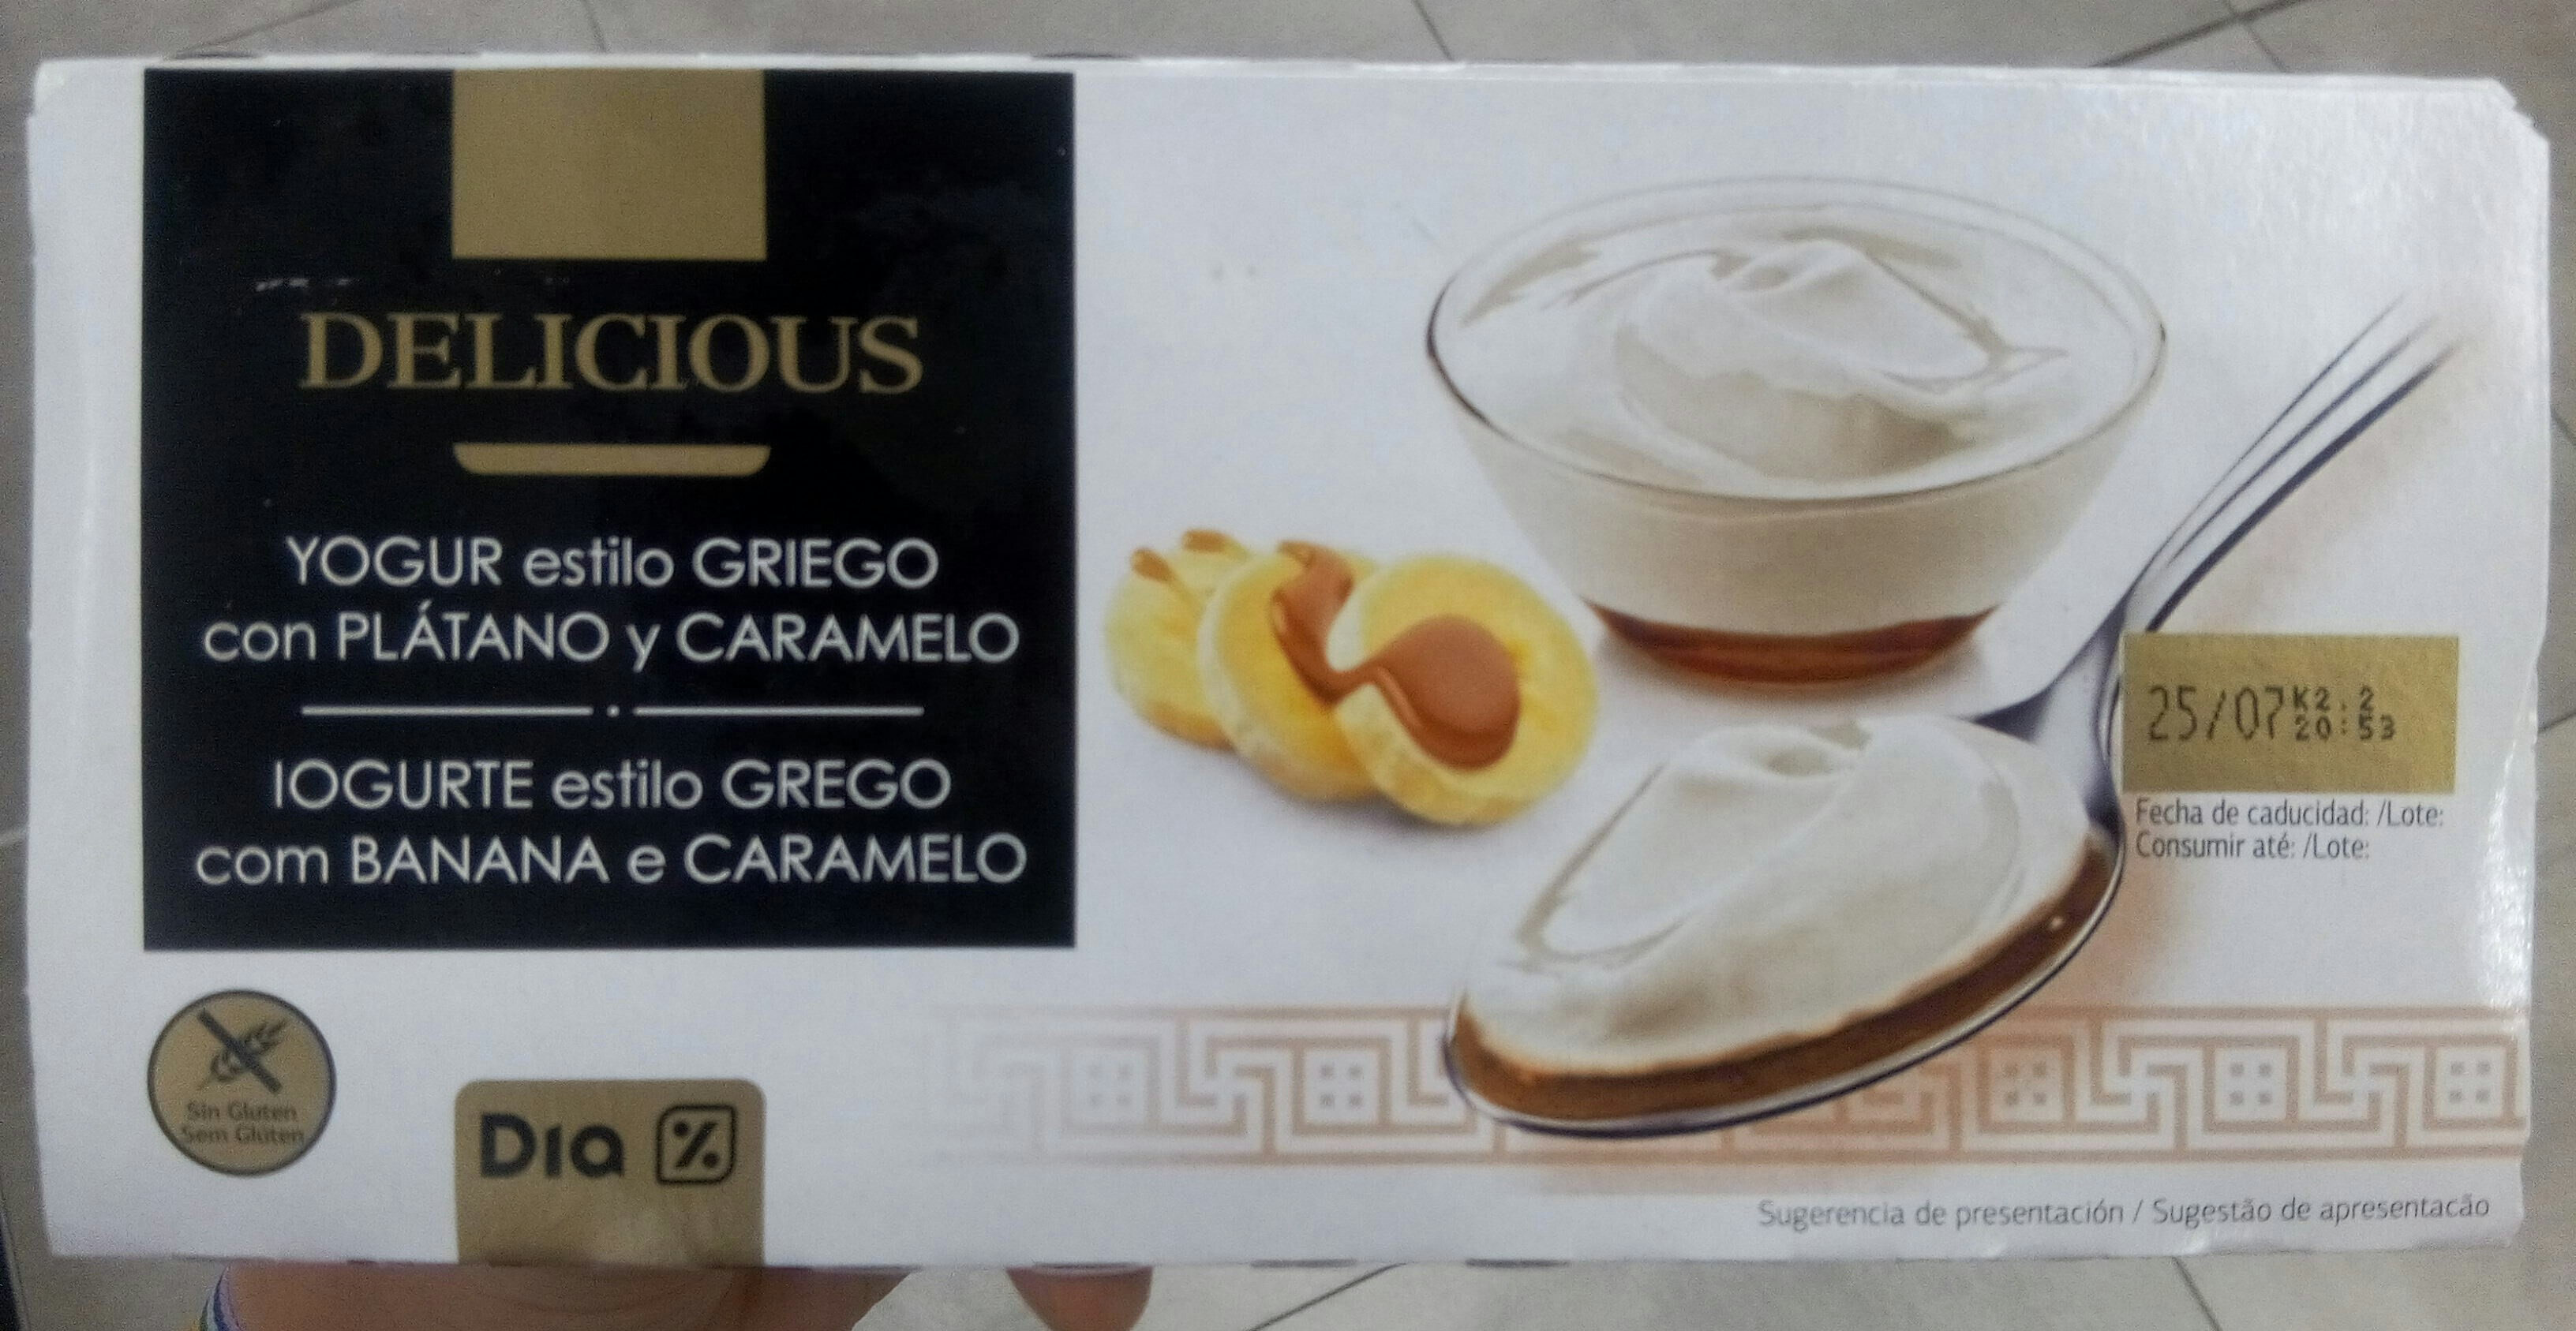 Delicious yogur estilo Griego con plátano y caramelo - Producte - es